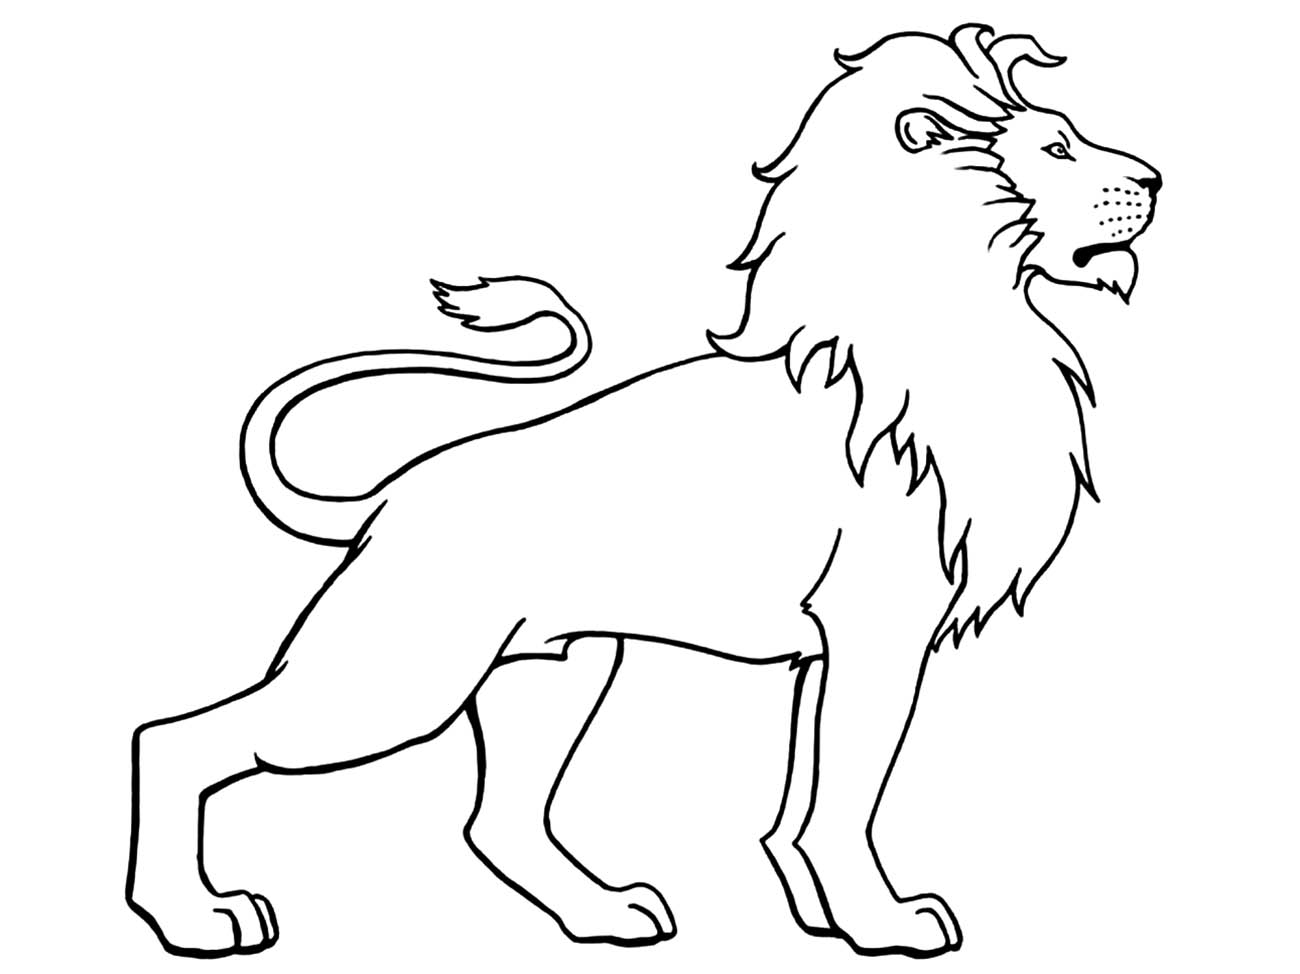 imagem de leão de perfil para desenhar